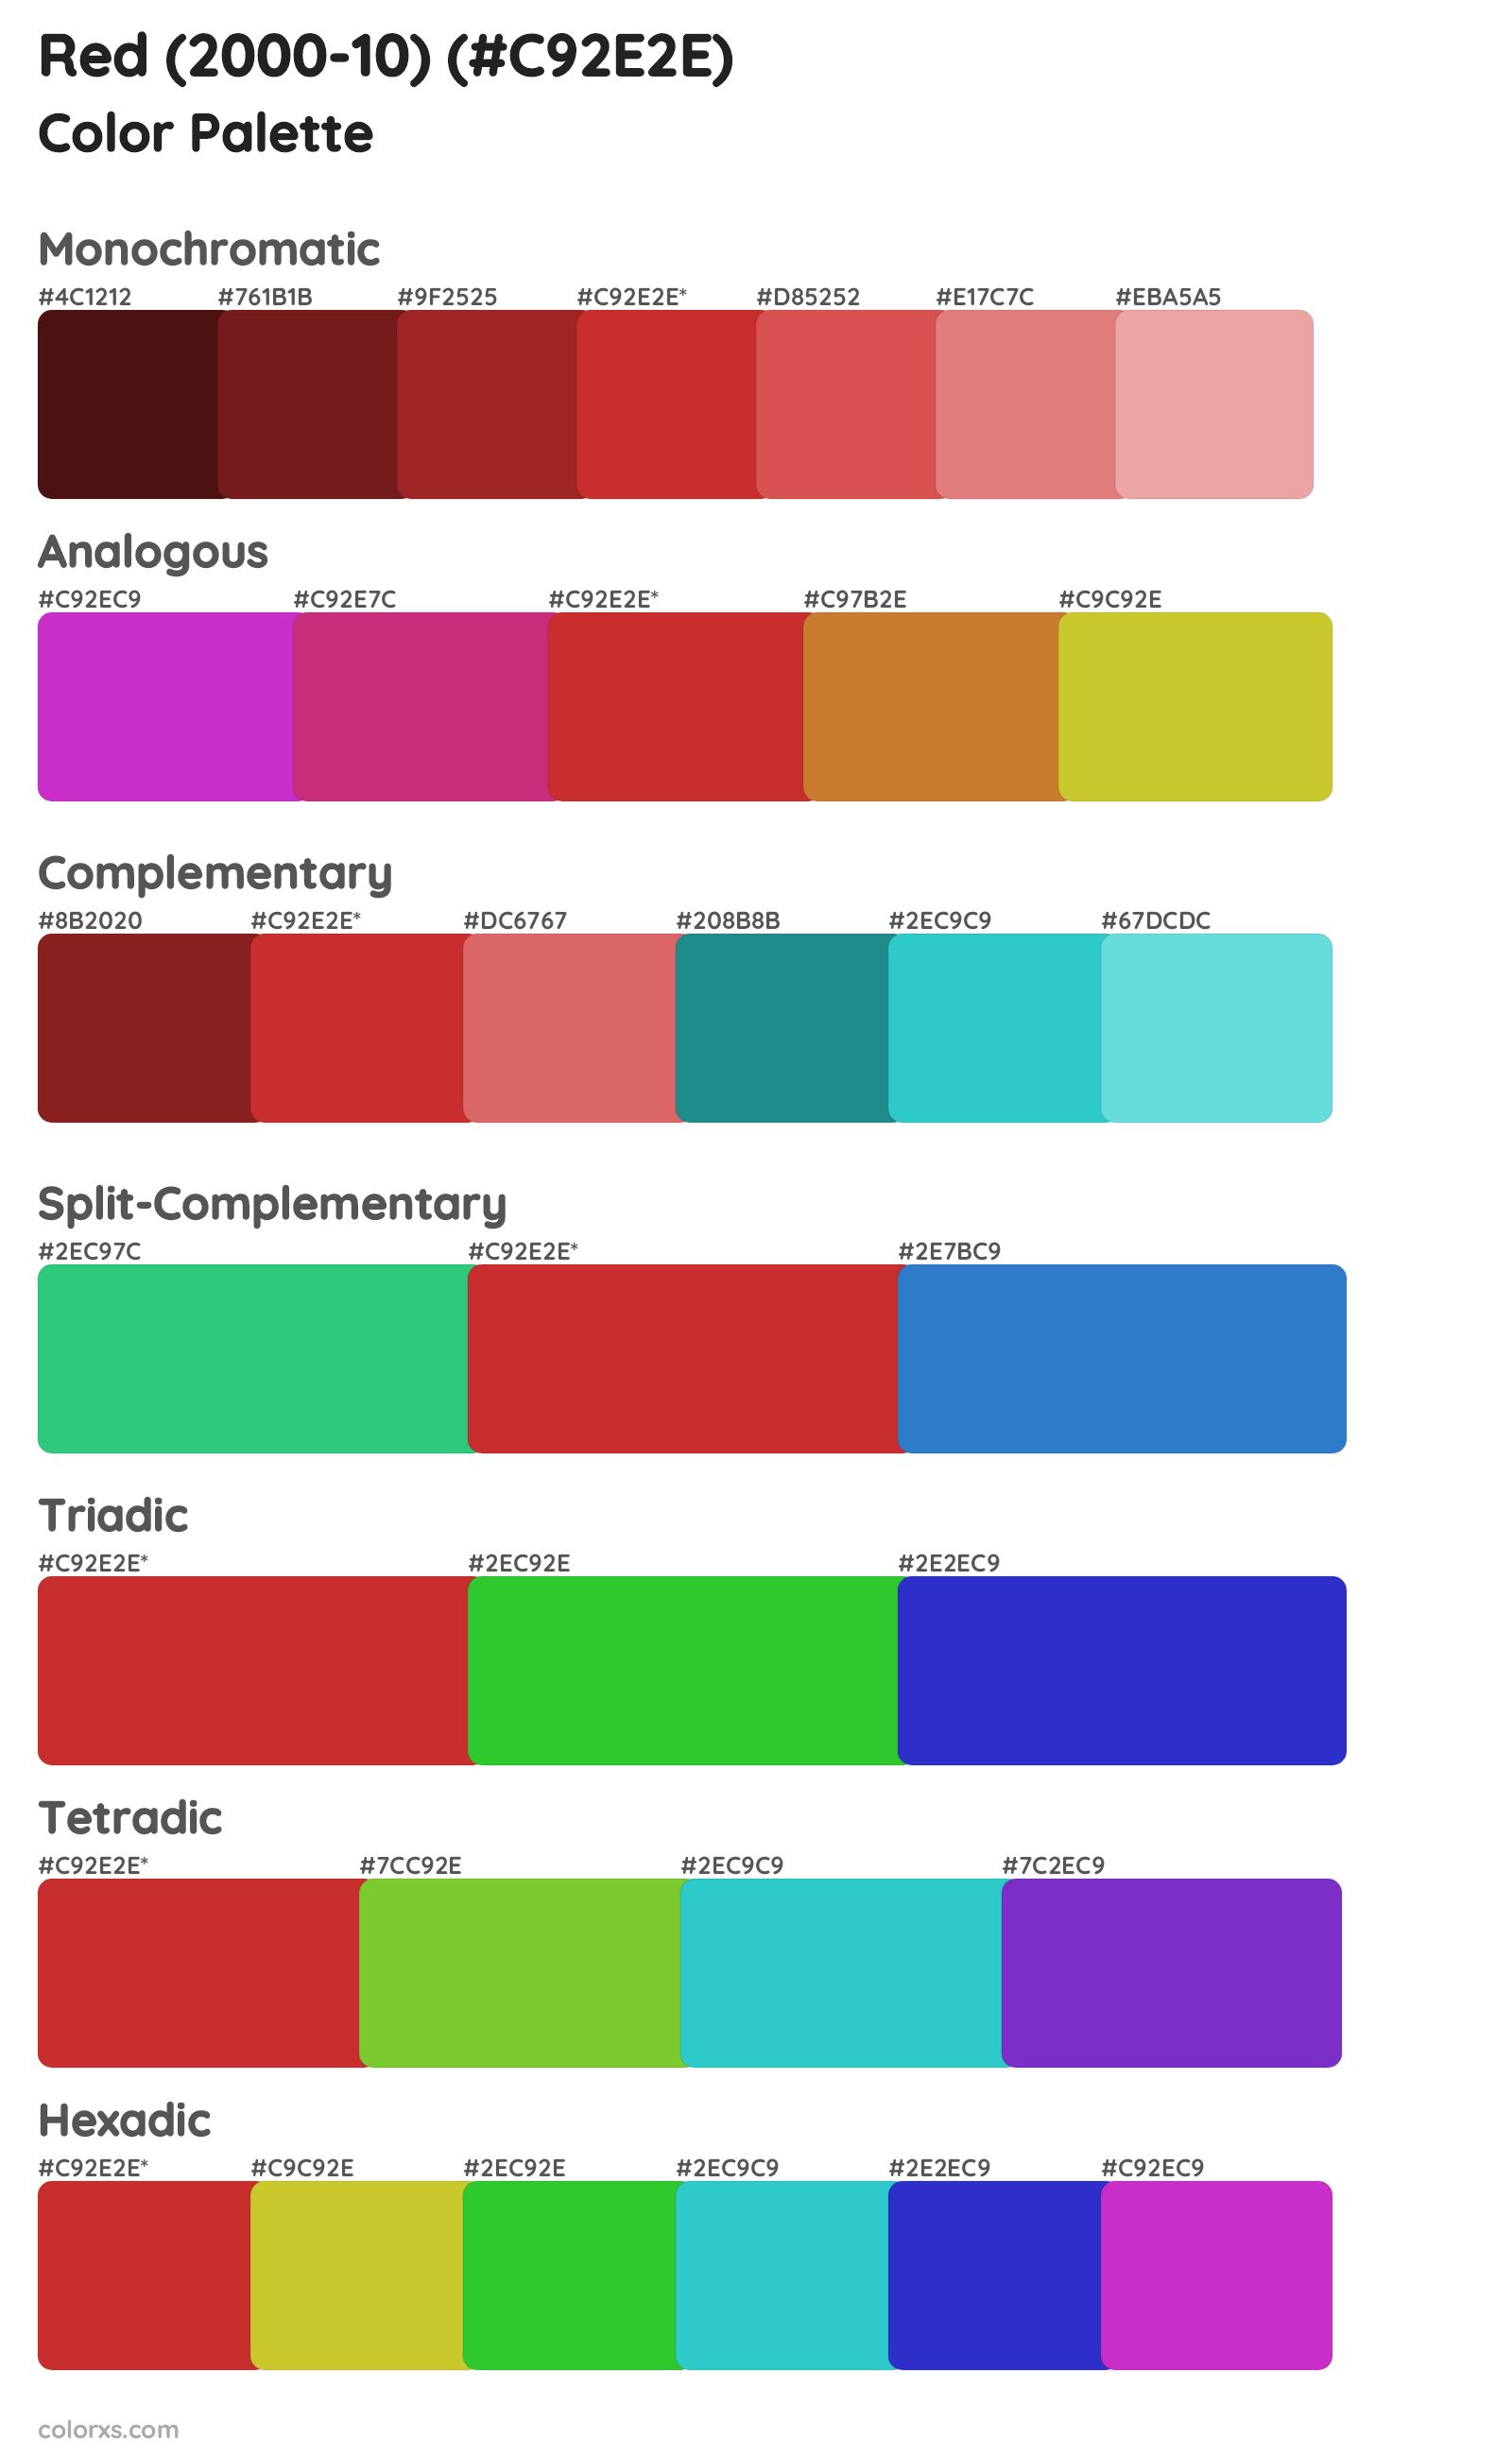 Red (2000-10) Color Scheme Palettes